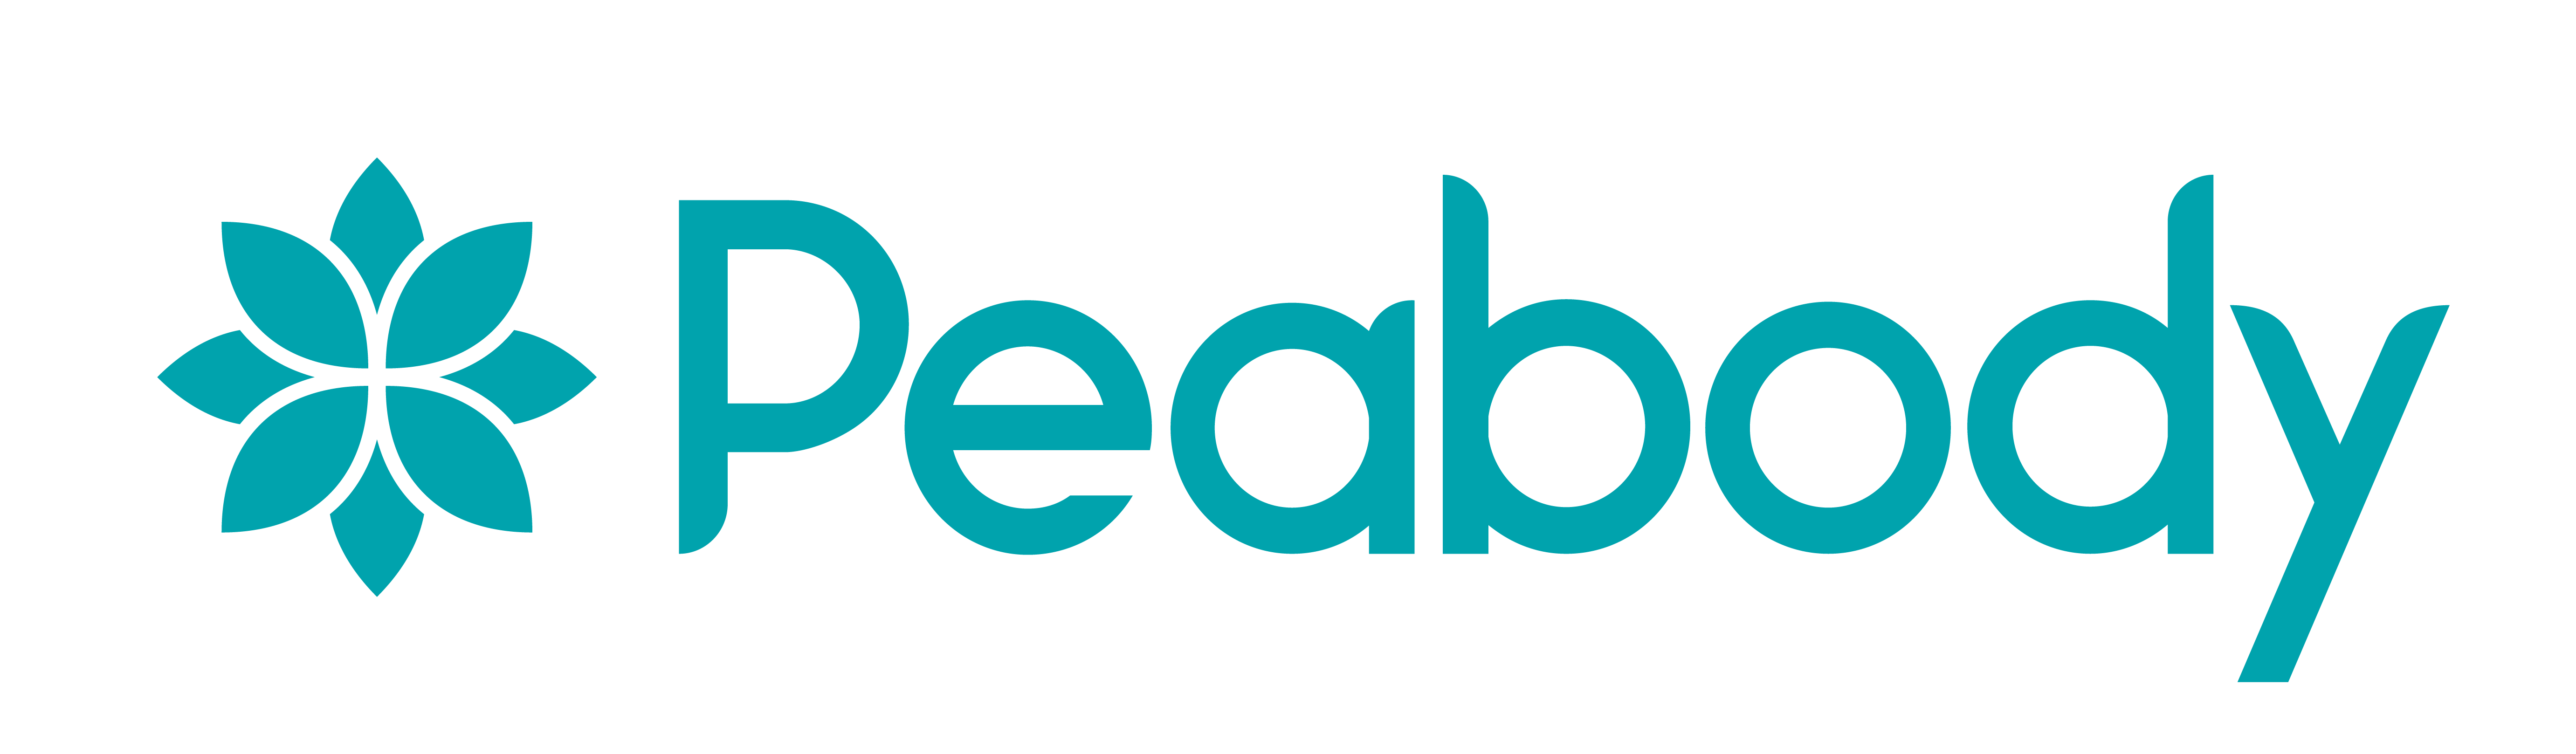 Peabody-logo